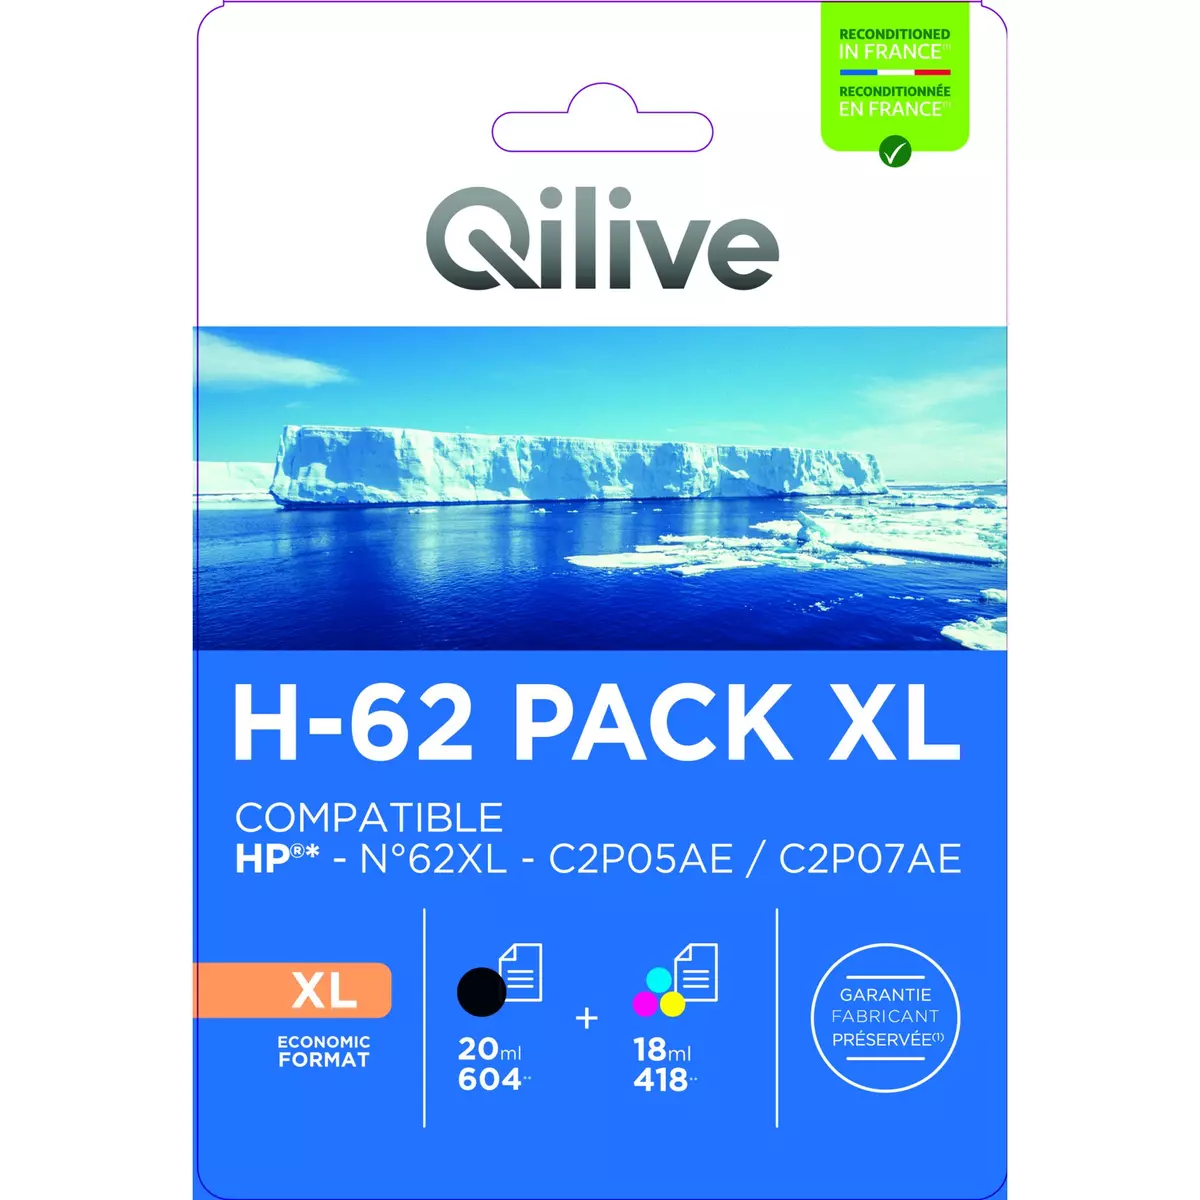 Pack 2 cartouches compatibles HP 304XL noir et couleur Pack de 2 cartouches  compatible